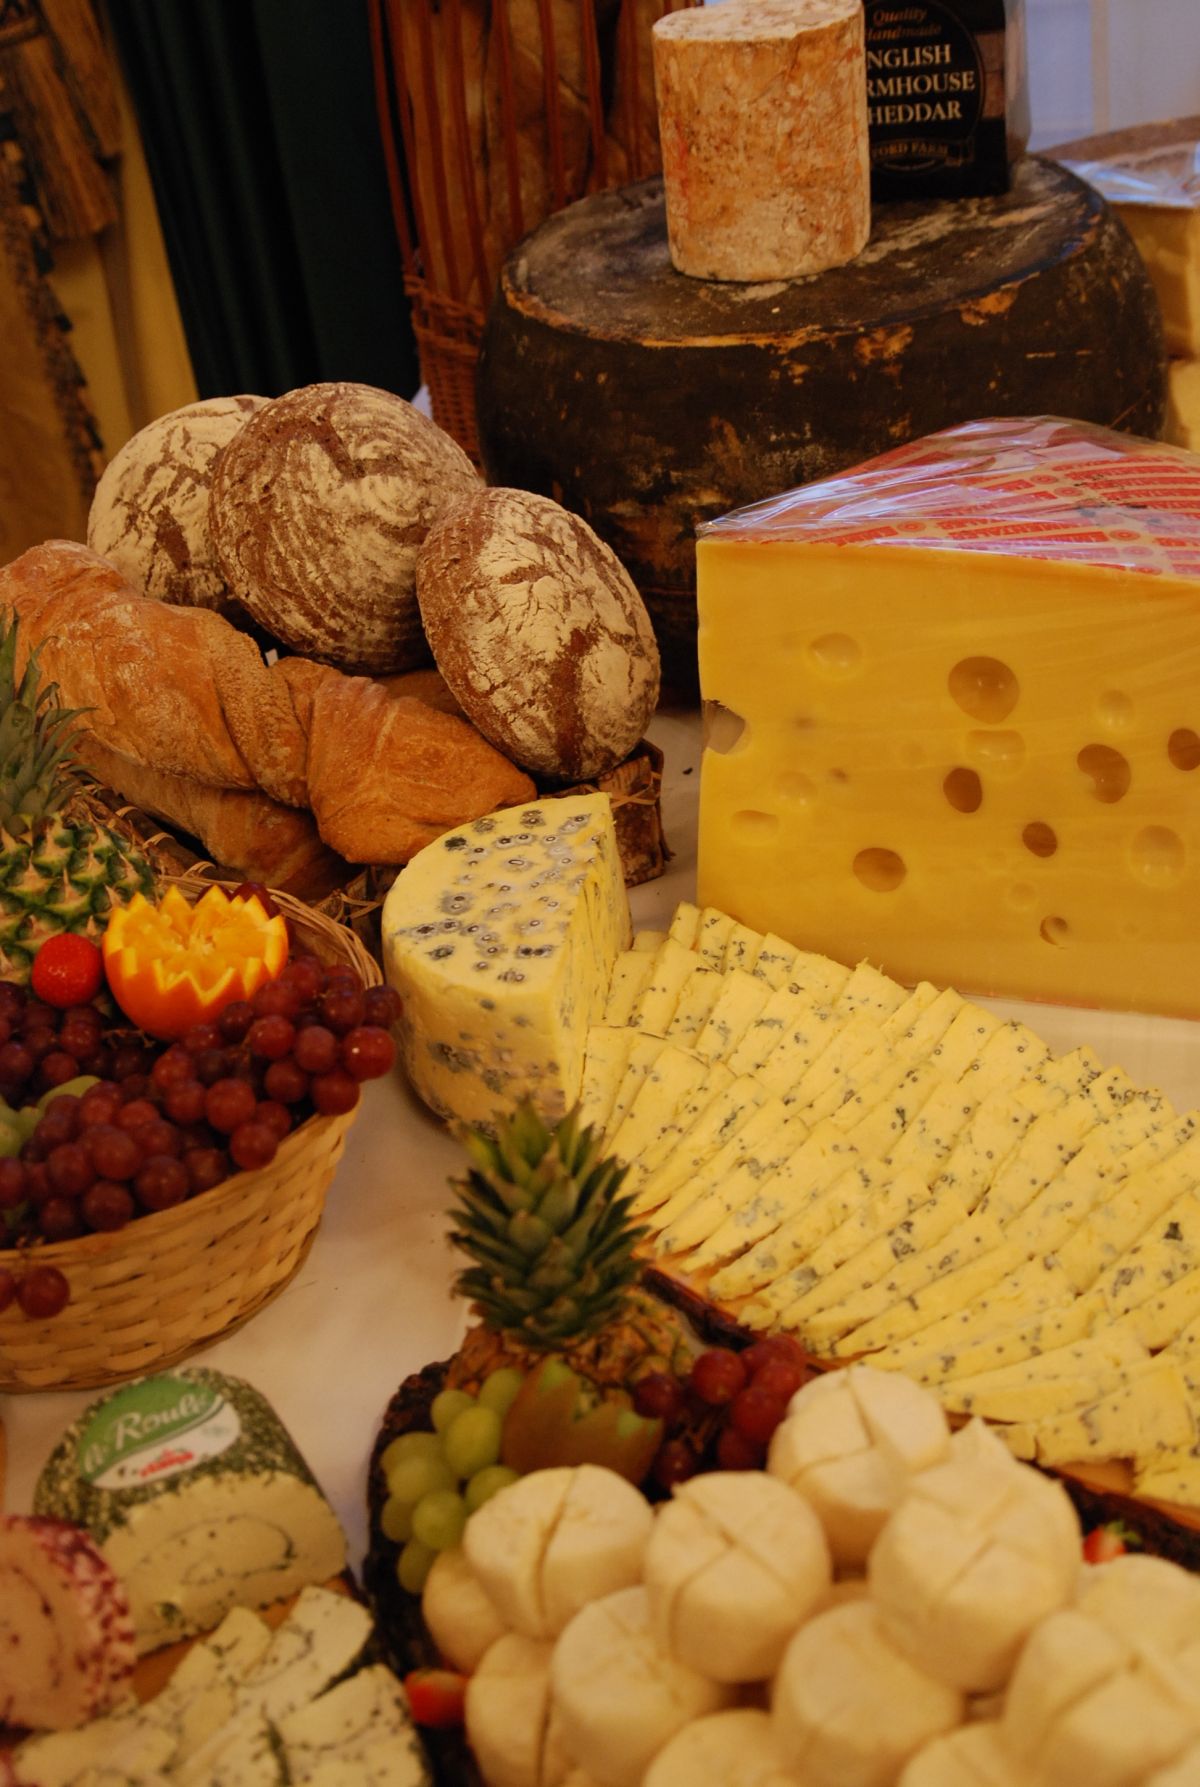 Mit tudsz a sajt- és borpárosításról?